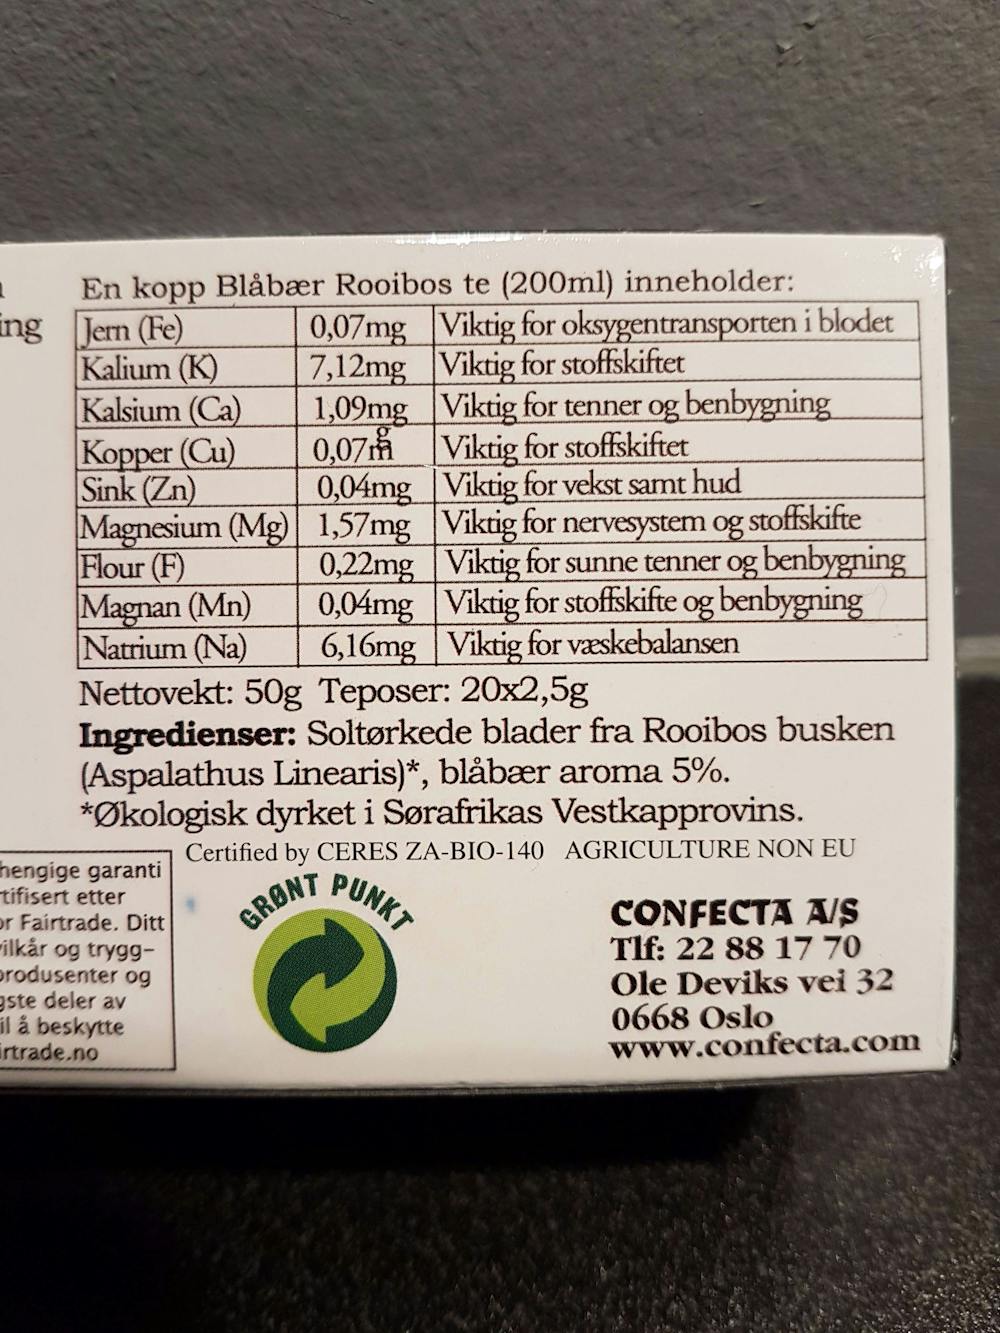 Ingrediensliste - Blåbær roobios, Confecta